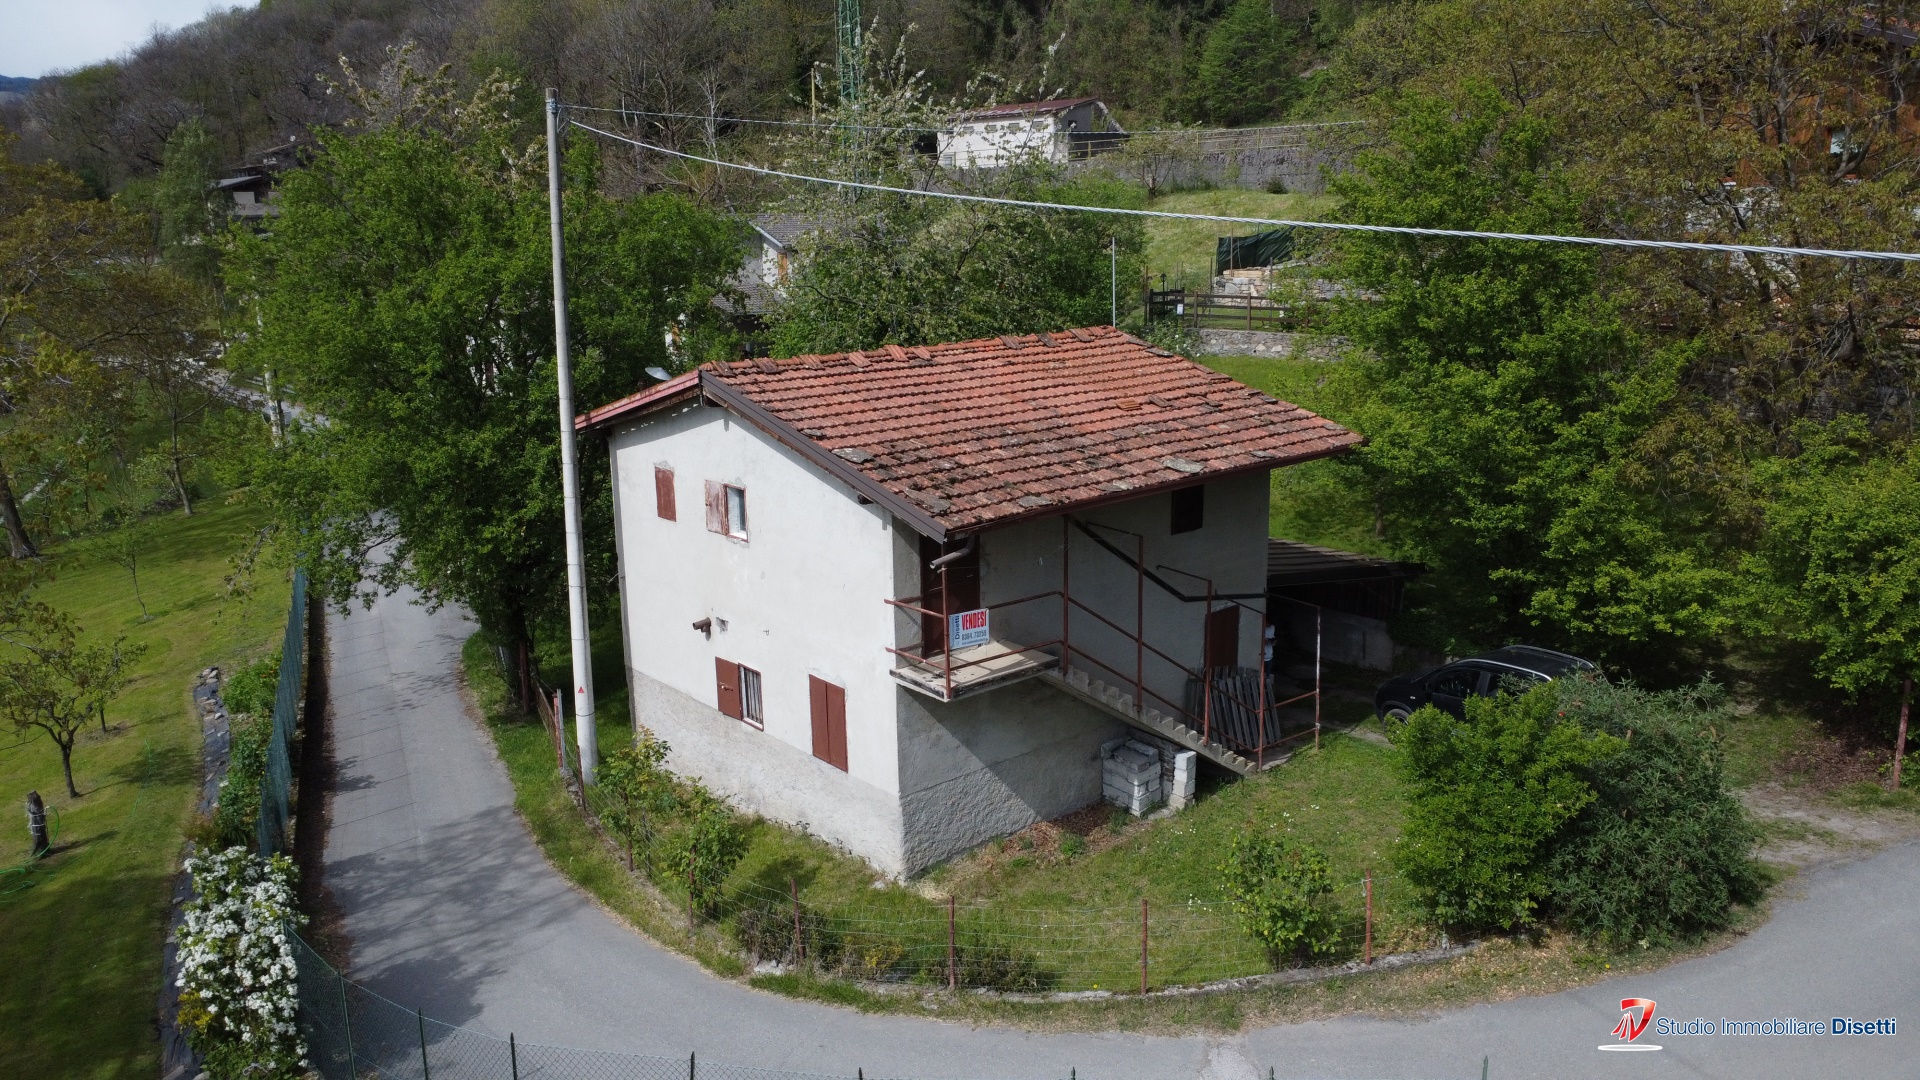 Villa in vendita a Capo di Ponte, 5 locali, prezzo € 65.000 | PortaleAgenzieImmobiliari.it